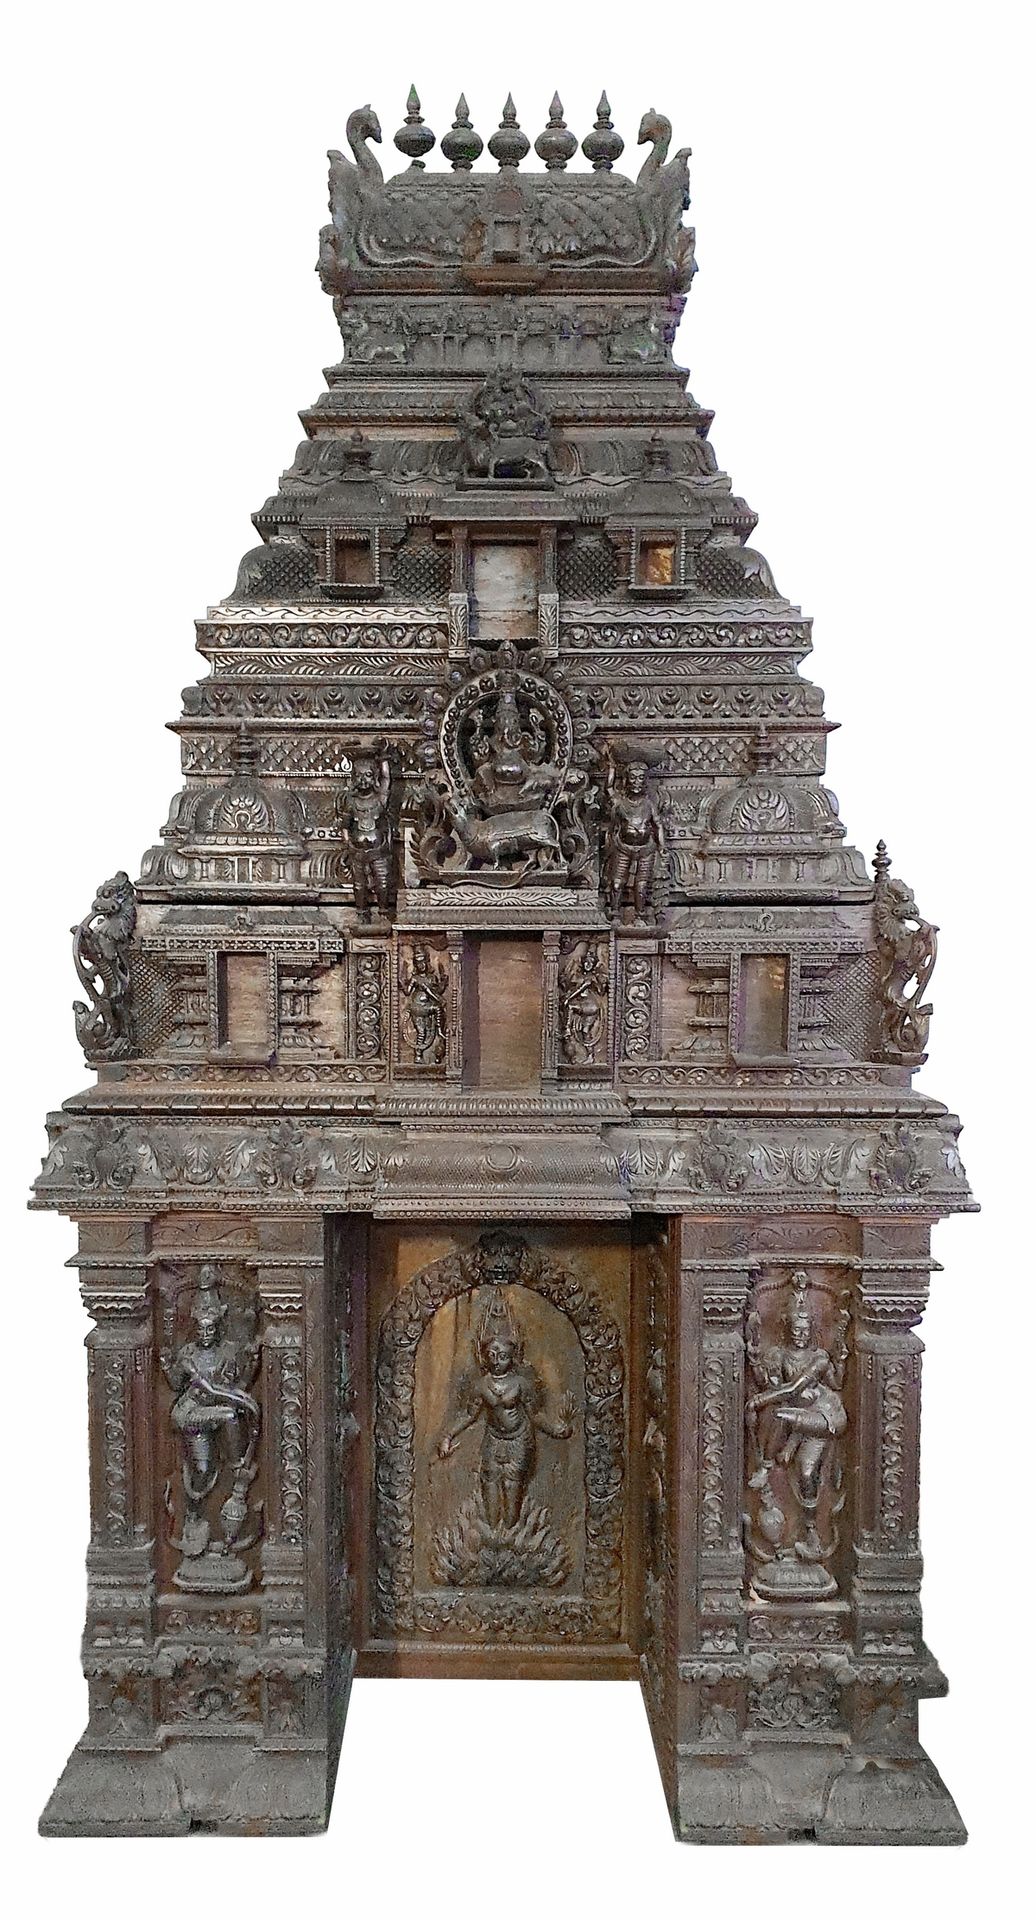 ASIE, début 20ème SIECLE Très impressionnant temple bouddhique
En bois dur exoti&hellip;